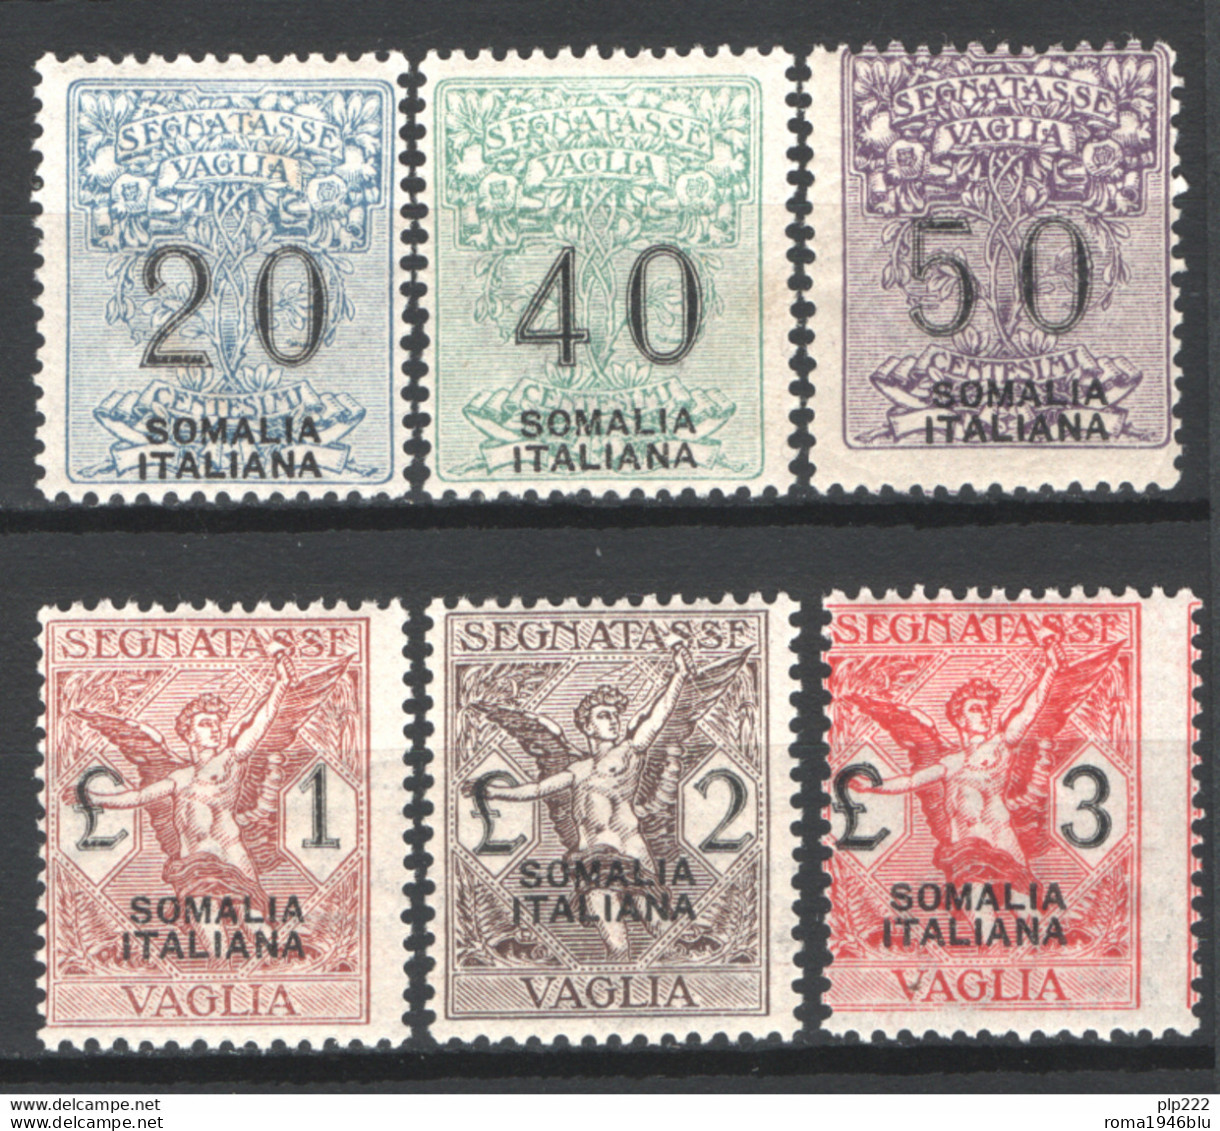 Somalia 1926 Segnatasse Vaglia Sass.SV7/12 **/MNH VF/F - Somalia